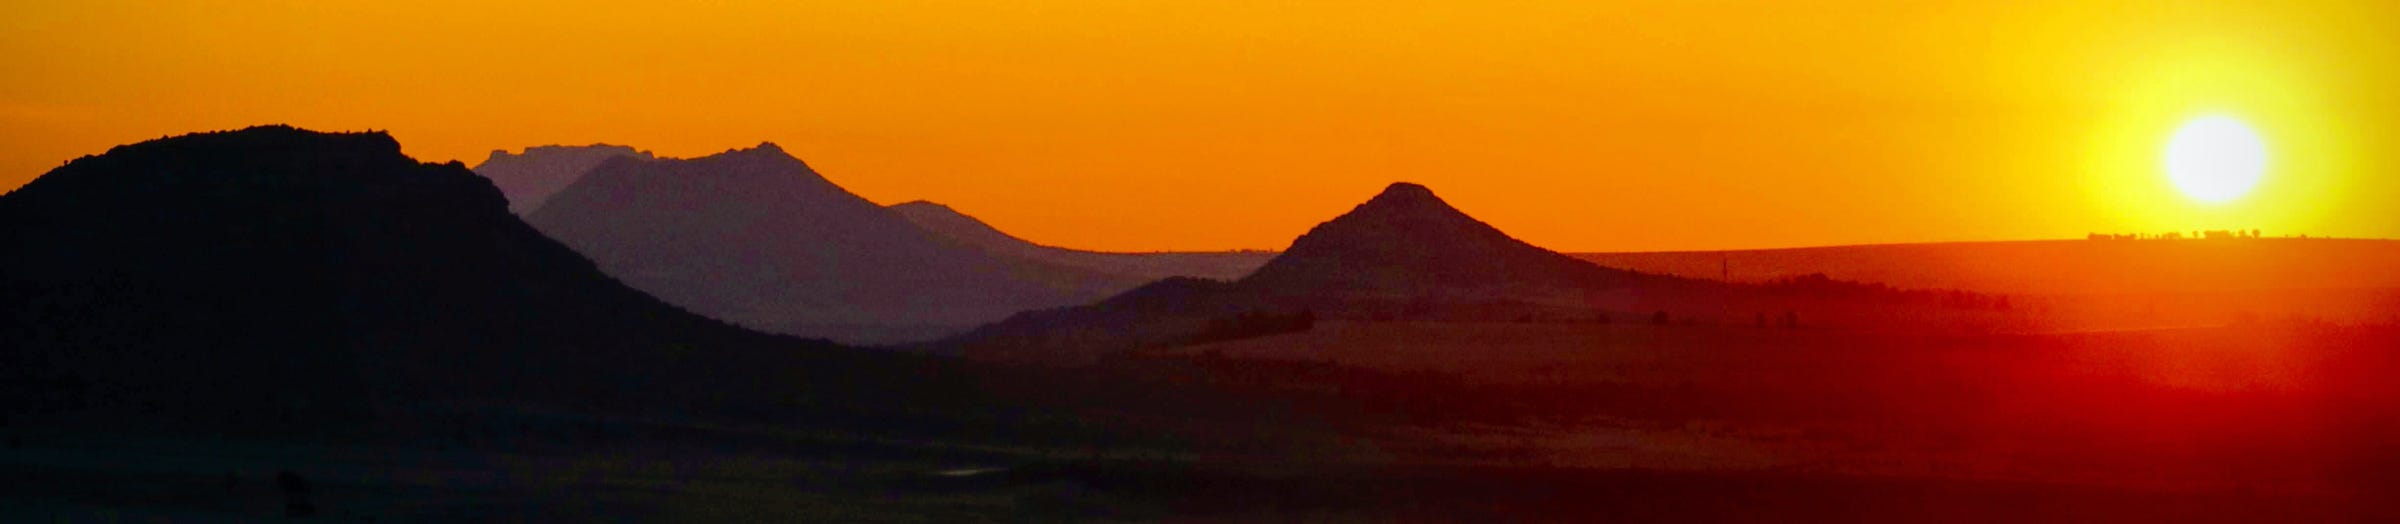 Sunset near Maseru, Lesotho.  Photo © copyright Stephen Codrington, 2018.